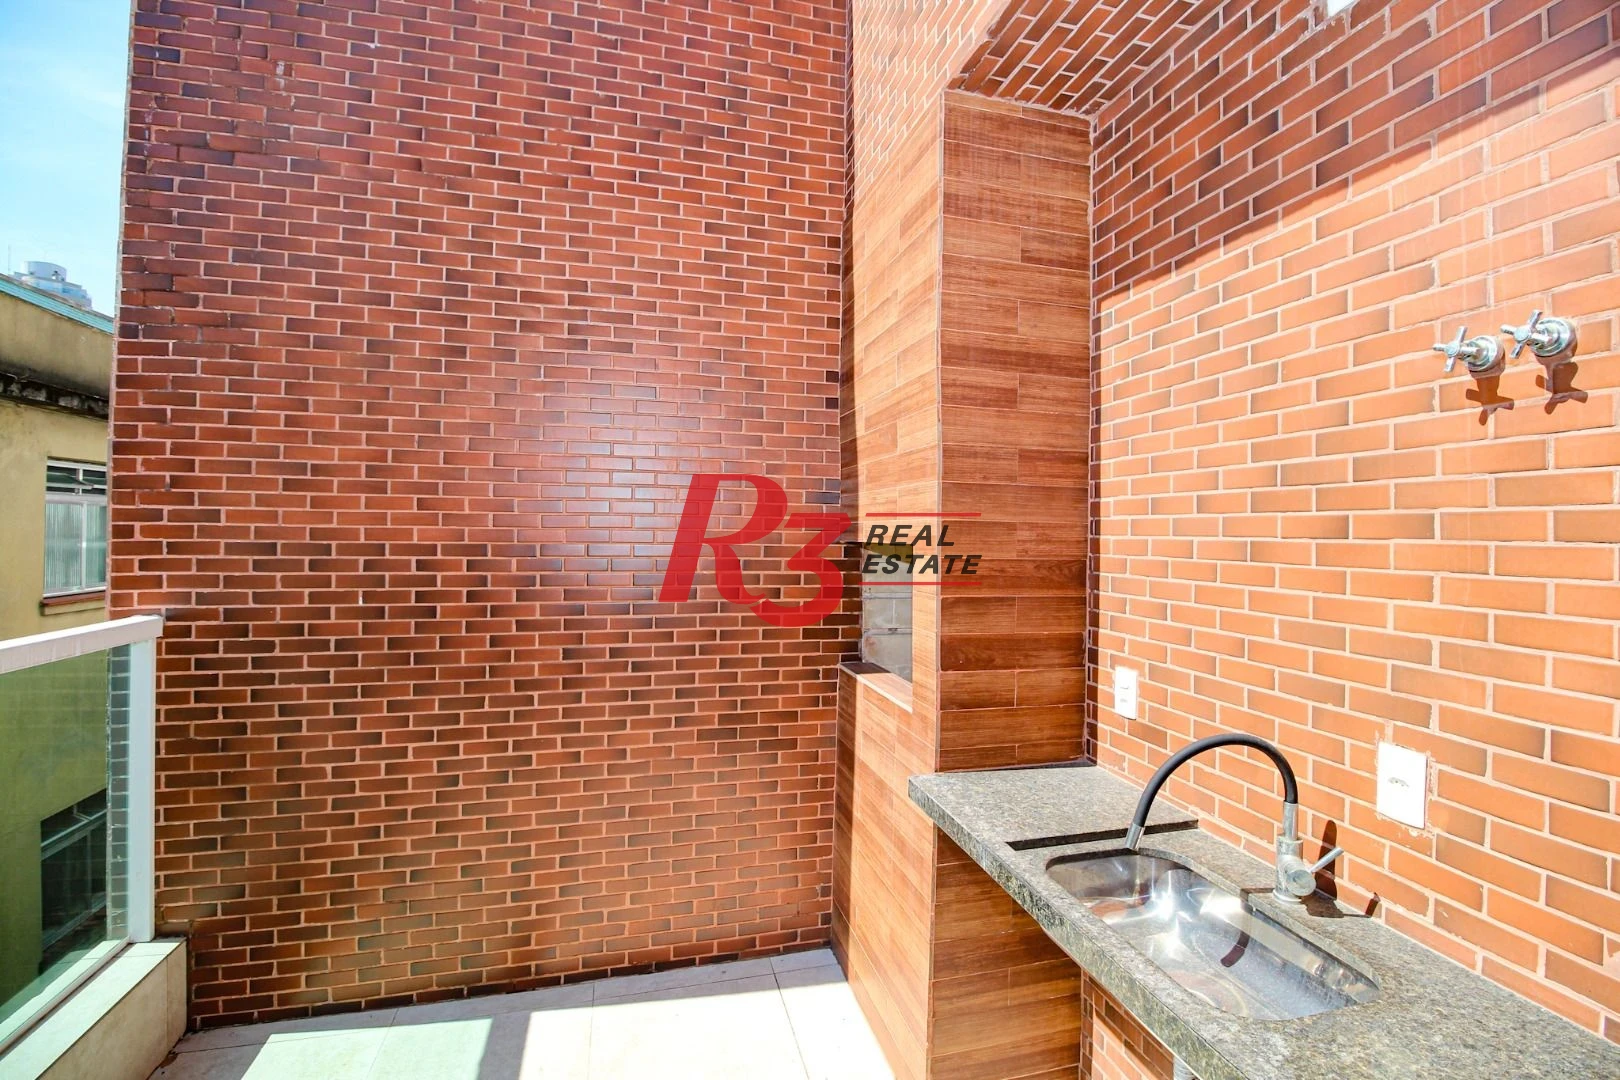 Sobrado à venda, 190 m² por R$ 860.000,00 - Gonzaga - Santos/SP